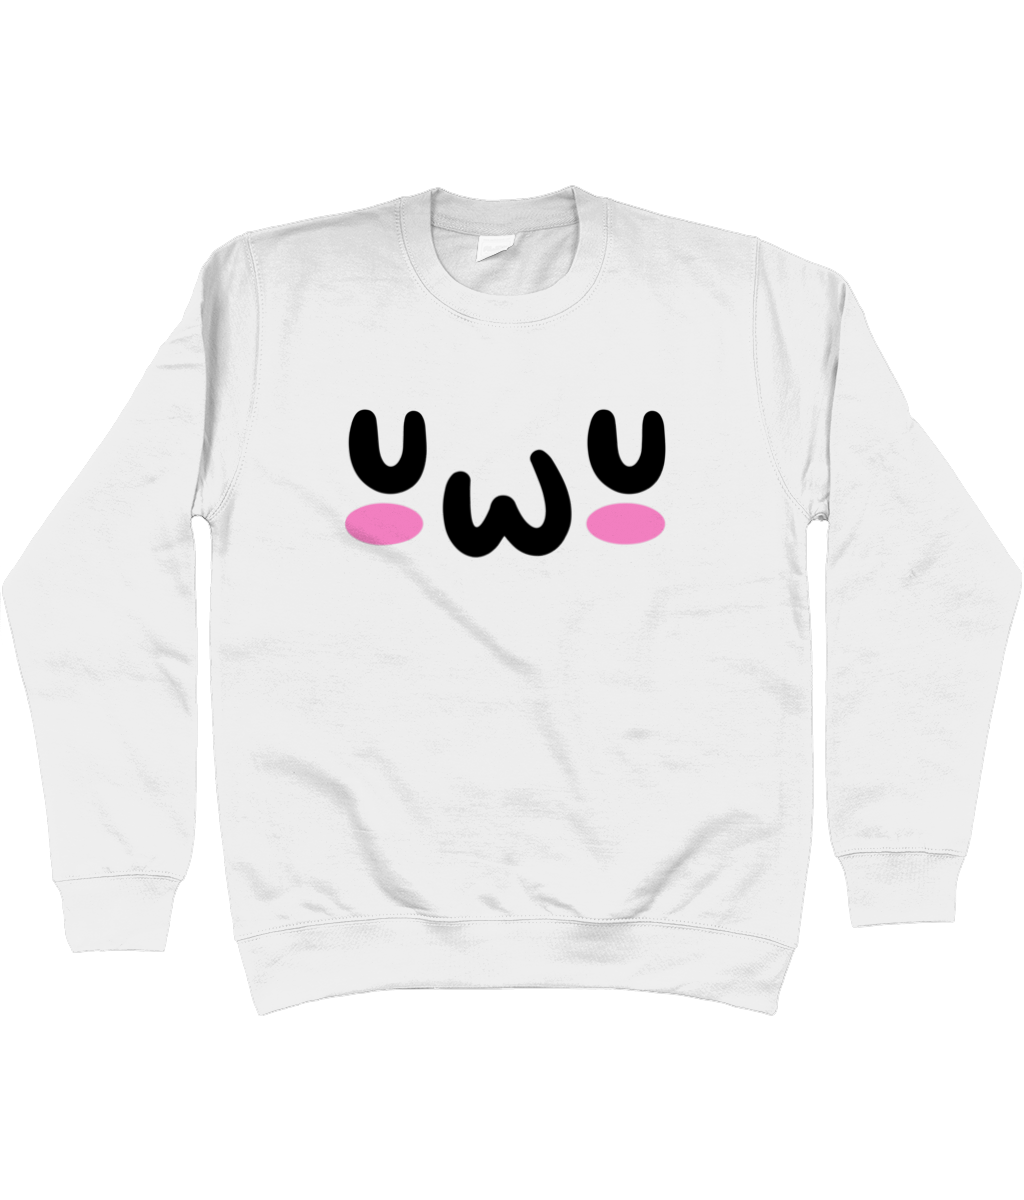 UWU Sweatshirt